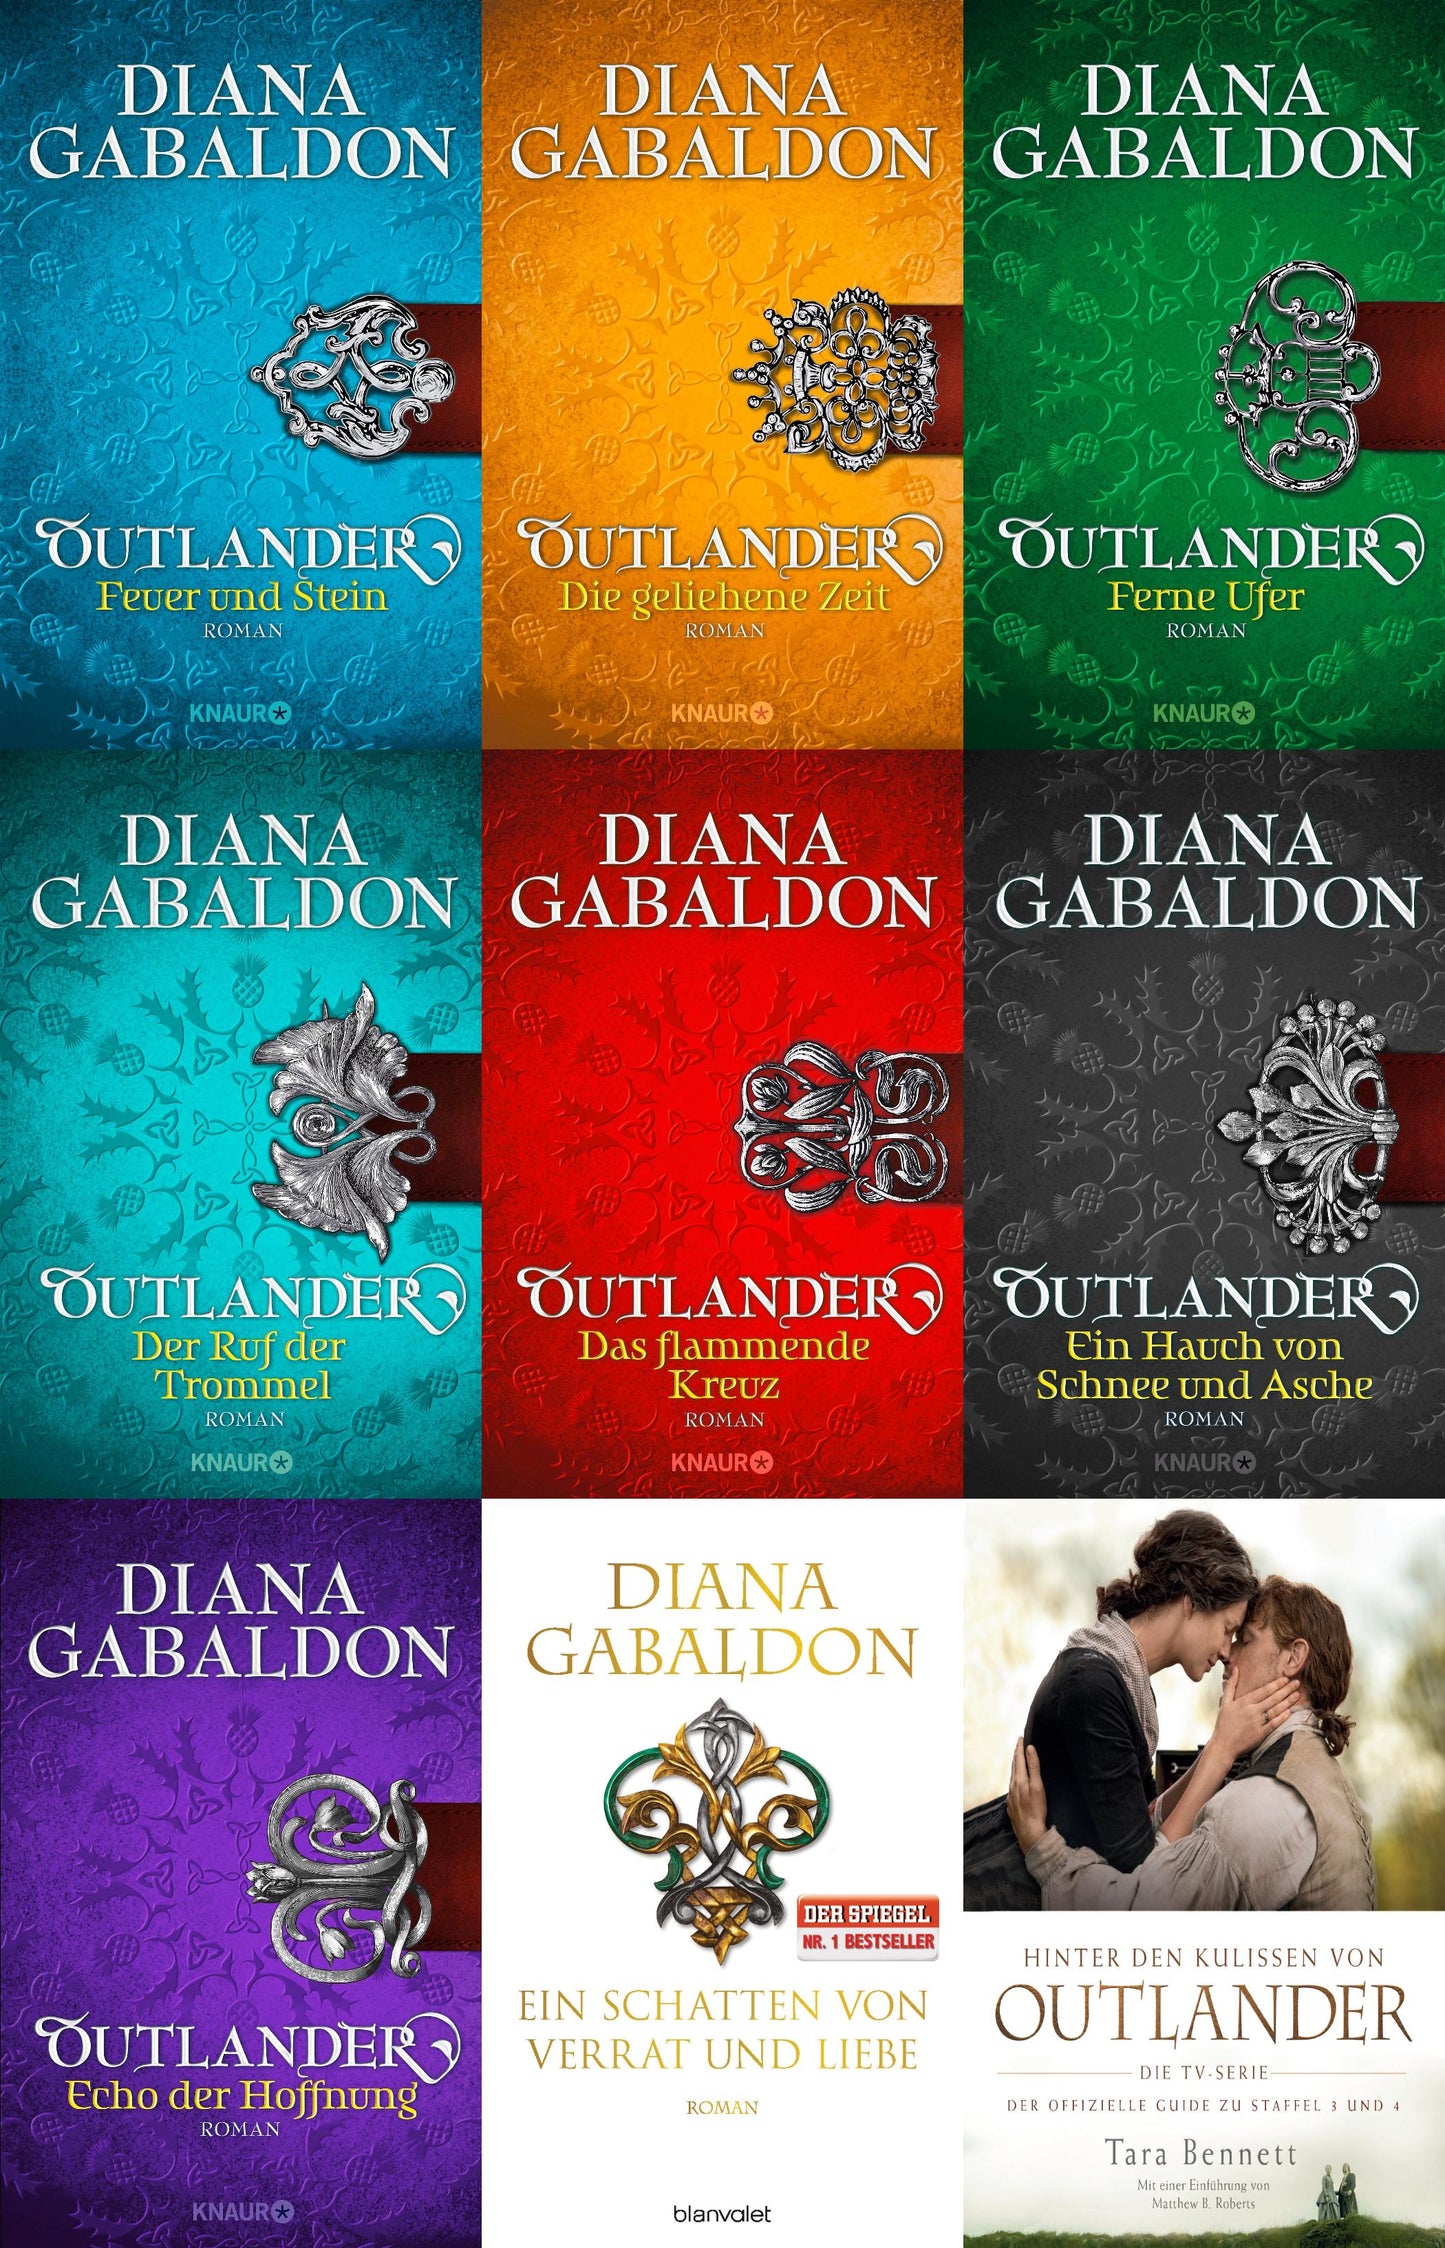 Die Outlander-Saga 1-8 + Hinter den Kulissen von Outlander plus 1 exklusives Postkartenset